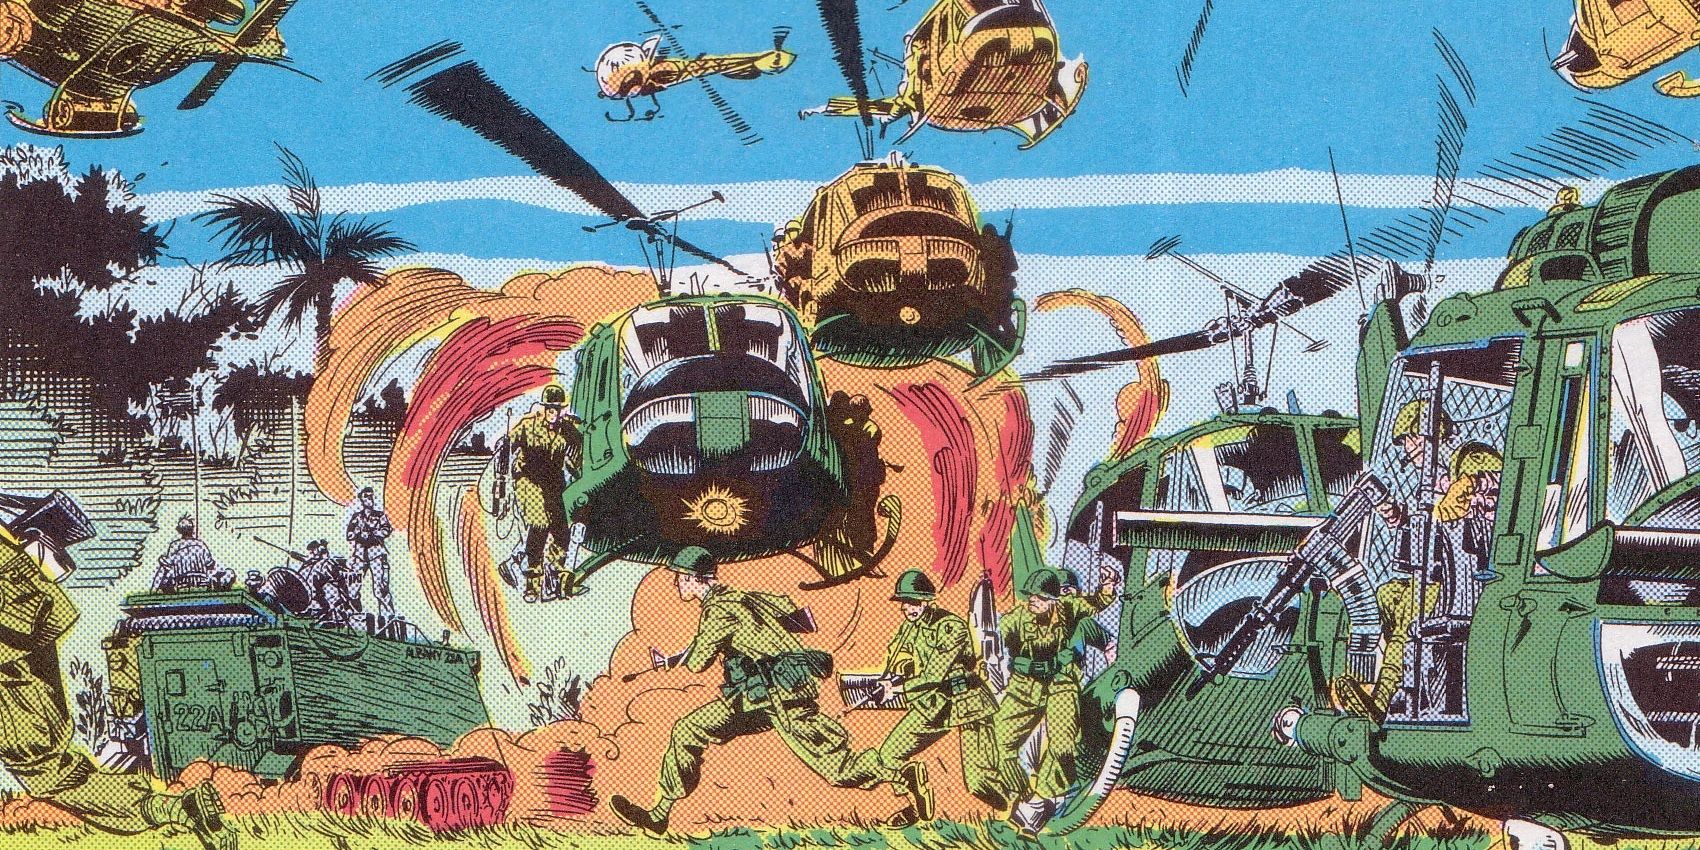 The Vietnam War depicted in Marvel Comics